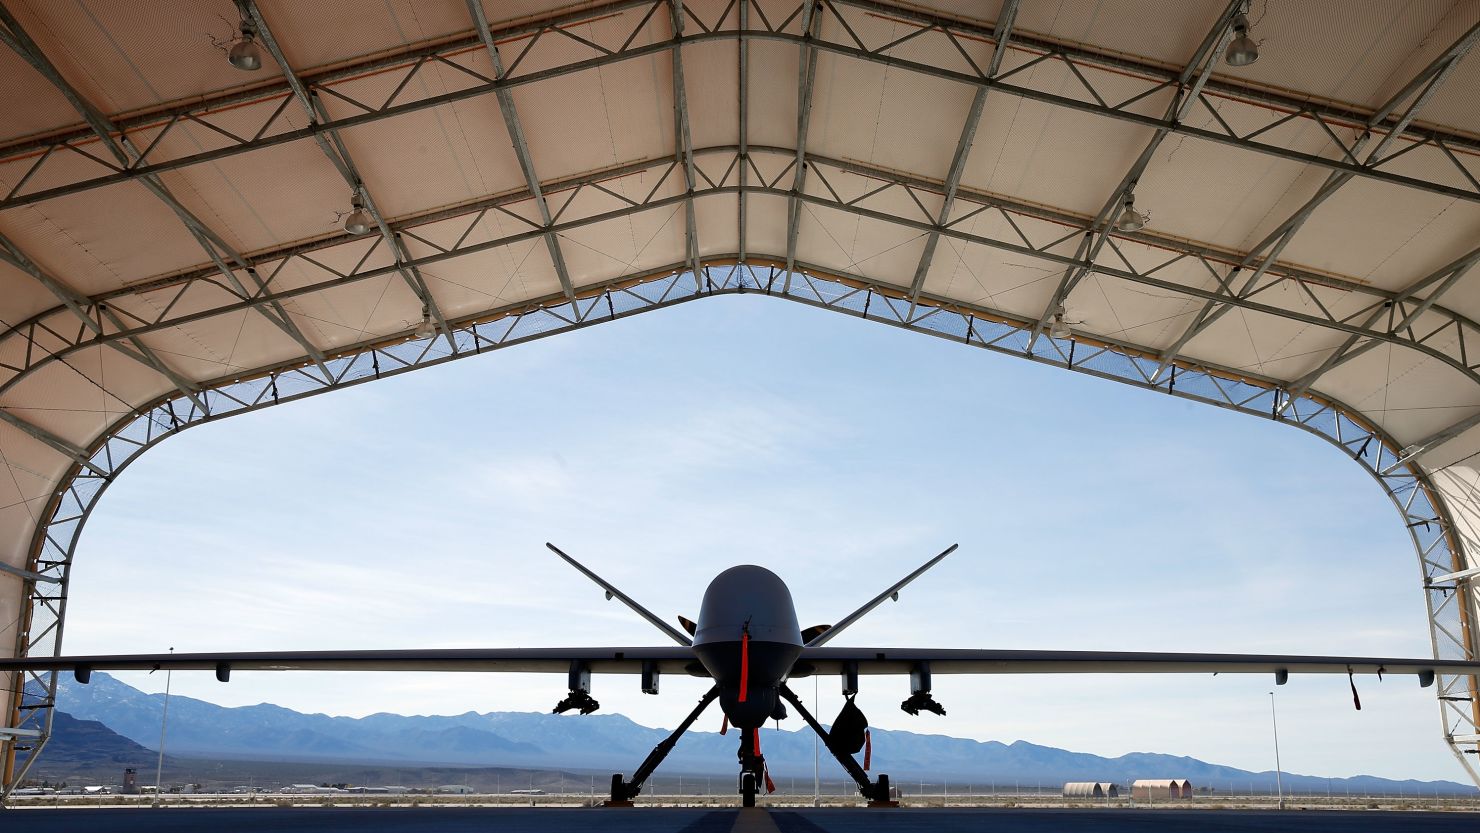 US Reaper drone